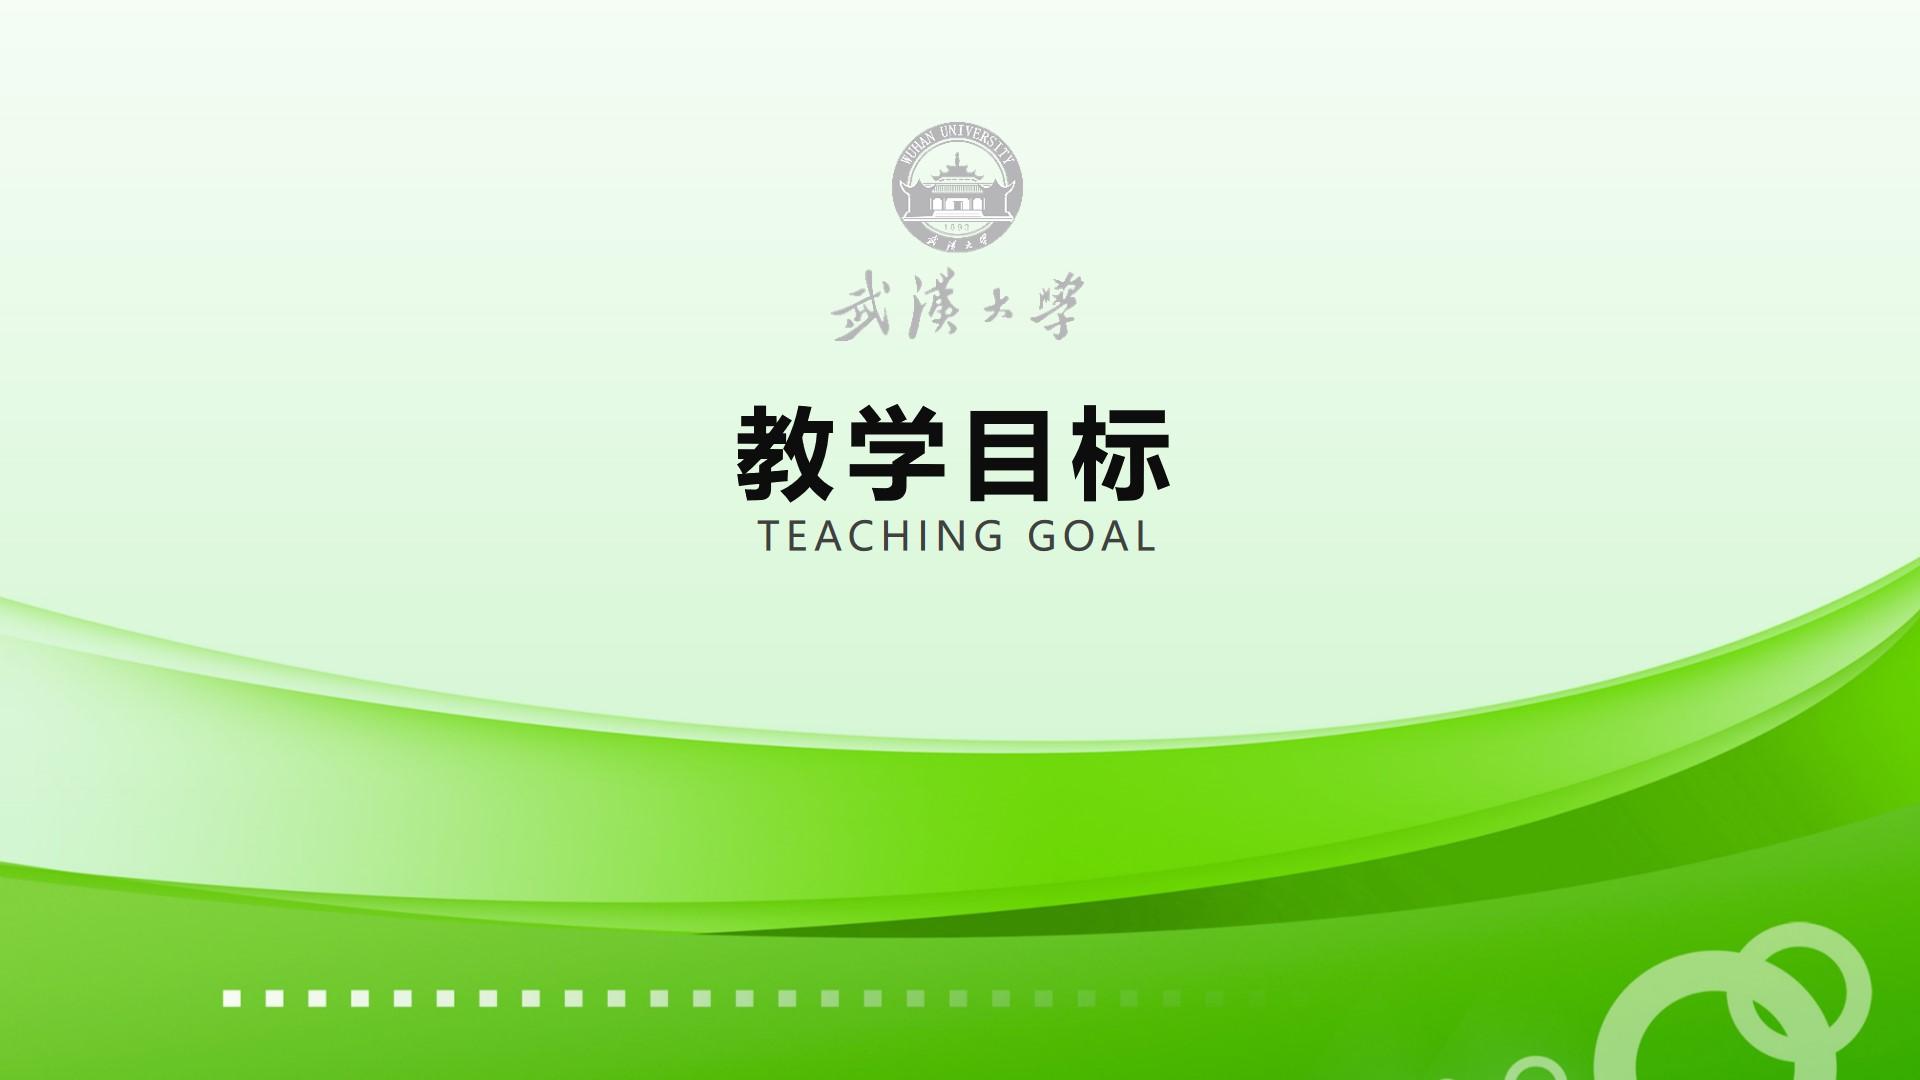 教育教学橙色白色标准卡通简洁绿色教学目标云素材PPT模板1672421748573